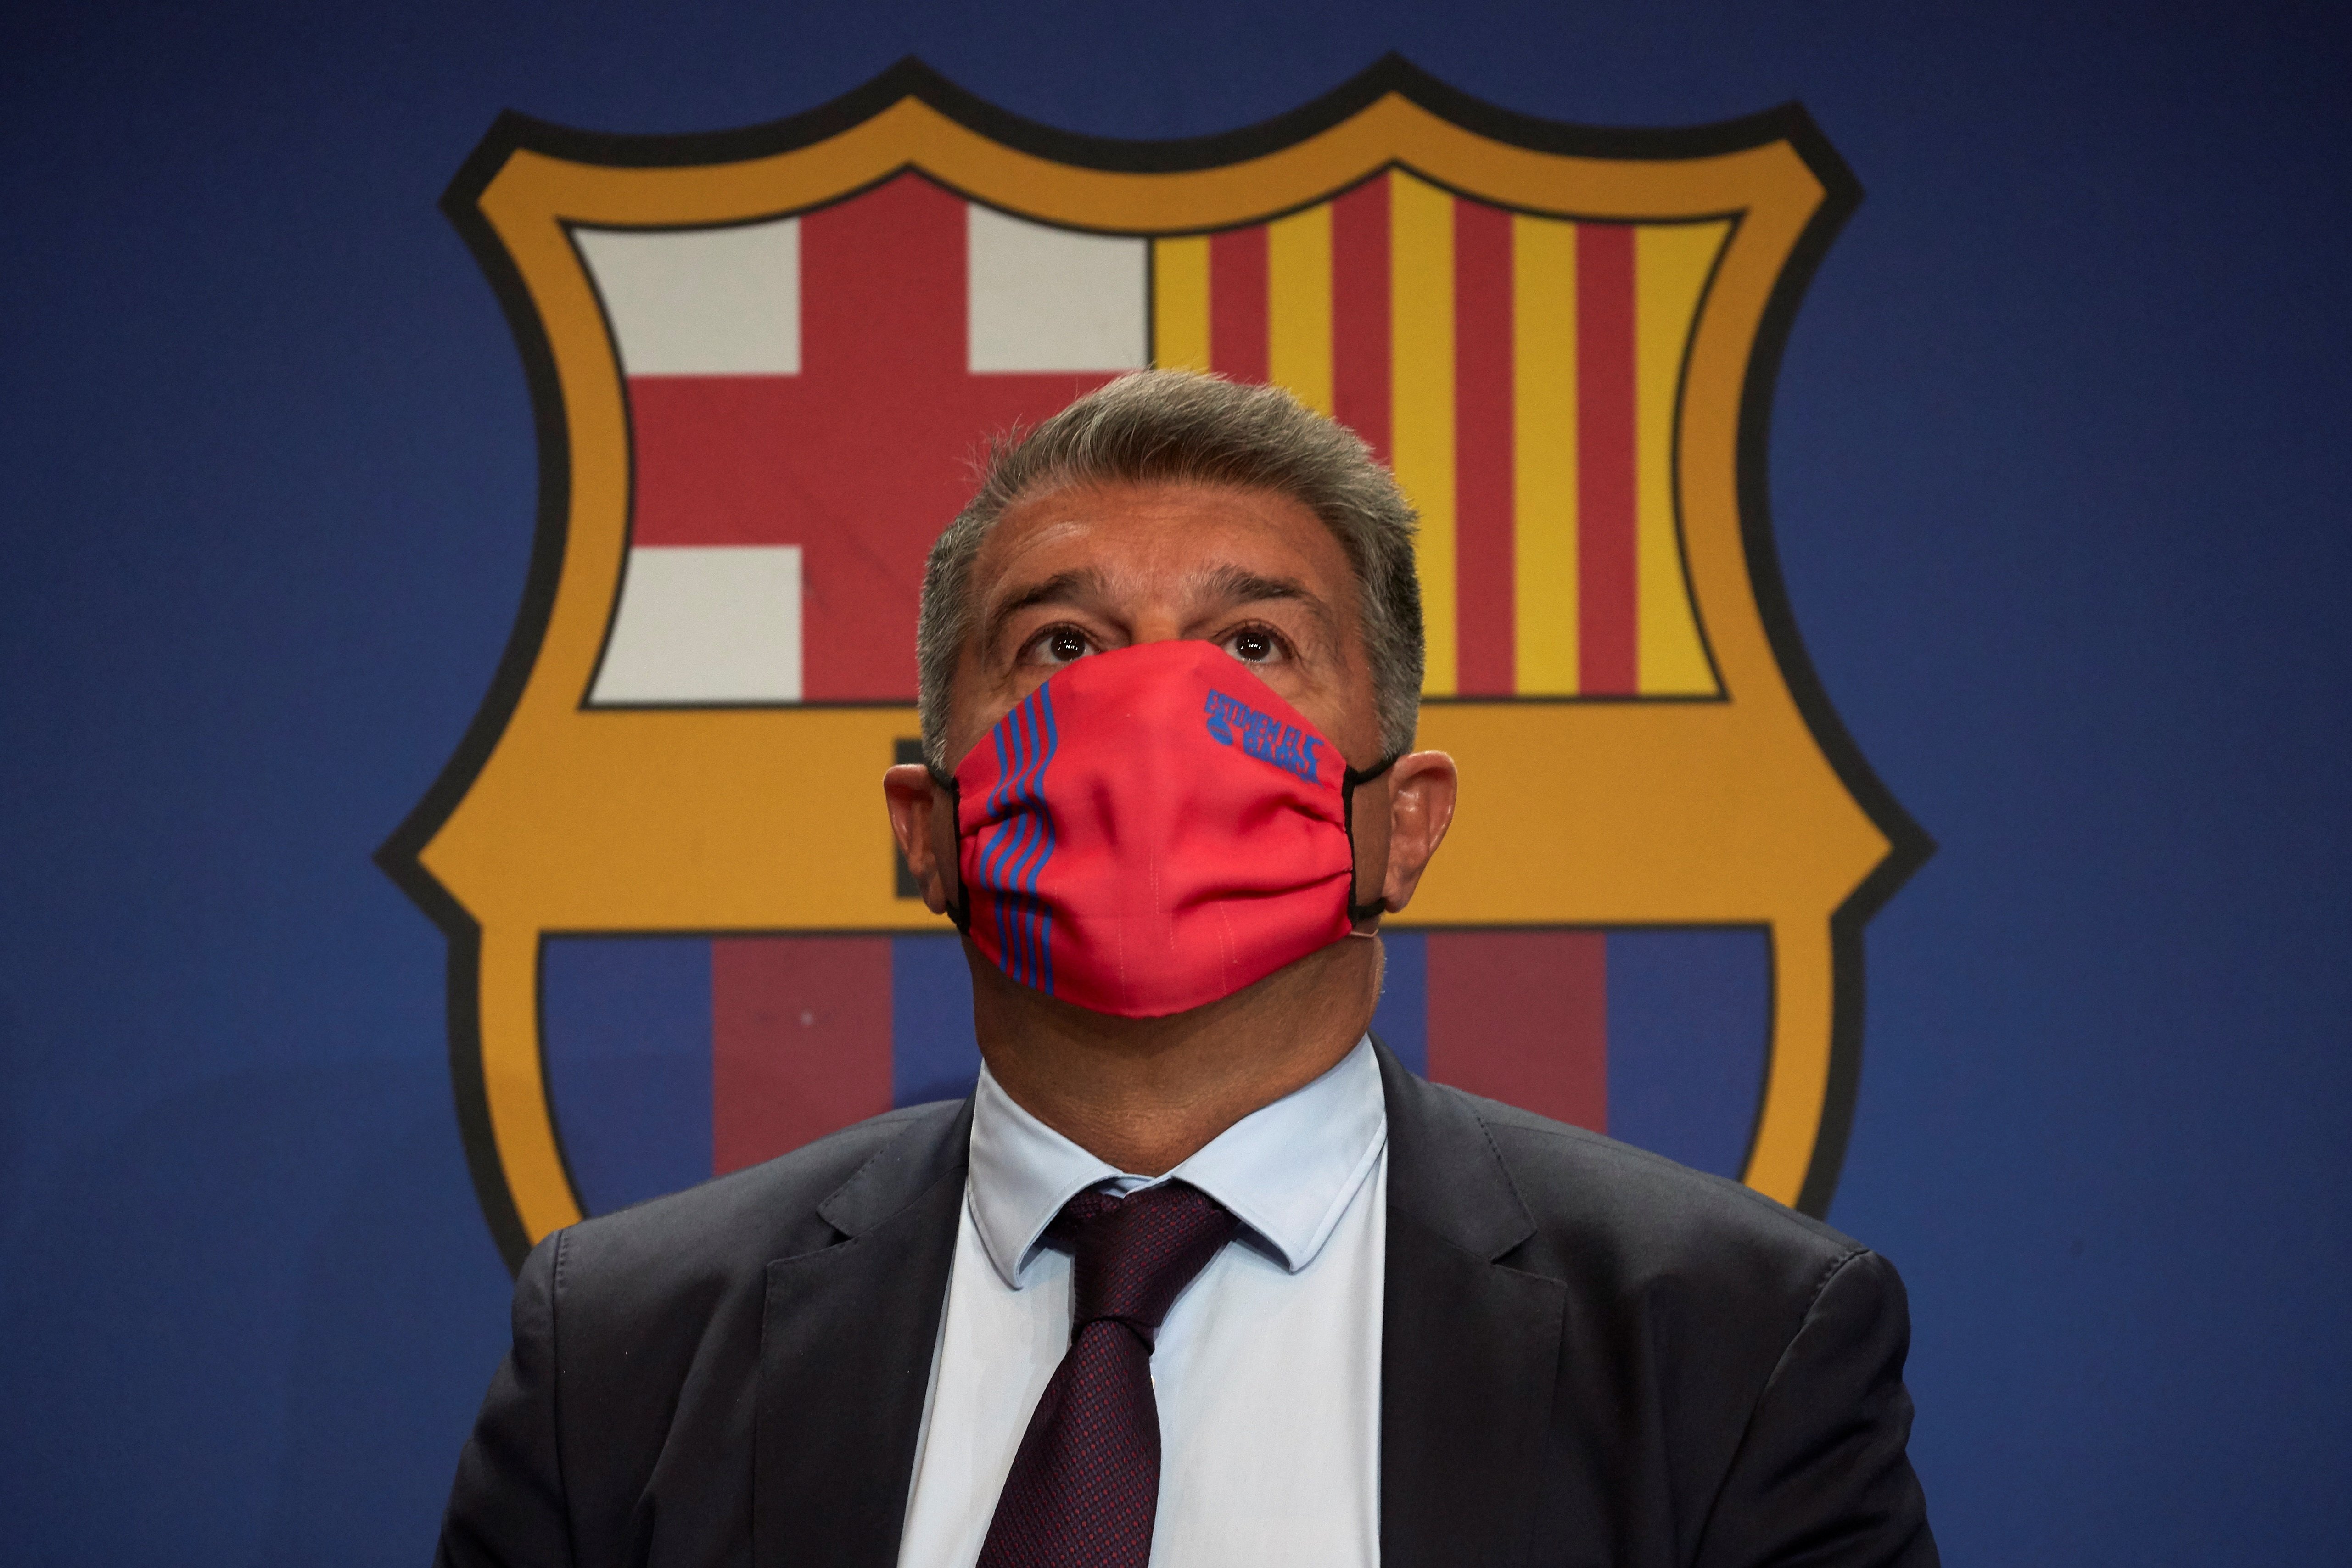 El United asalta el Barça, oferta inalcanzable para Joan Laporta que tiene 4 meses para convencerlo o vender